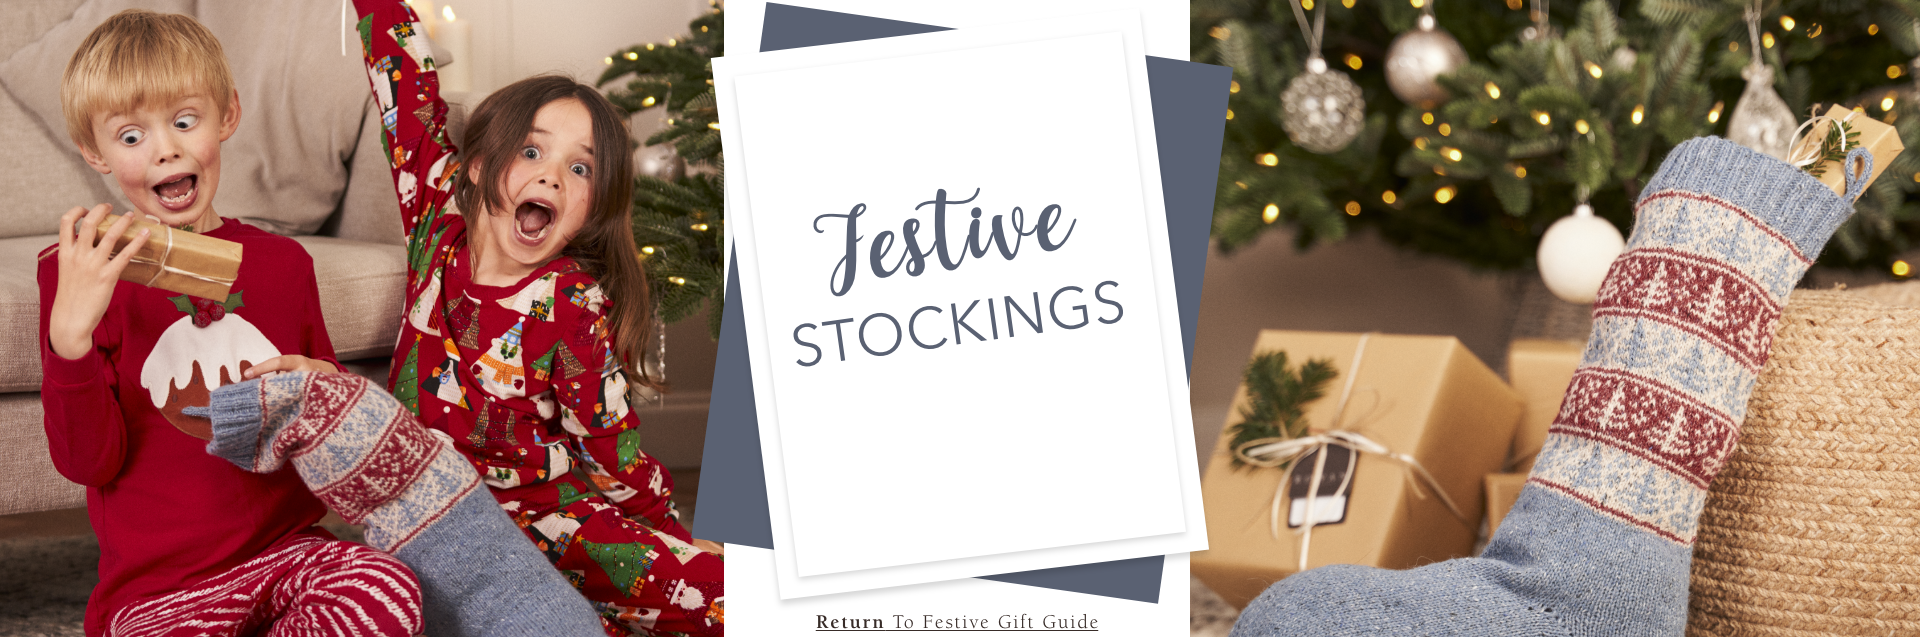 Festive Stockings banner